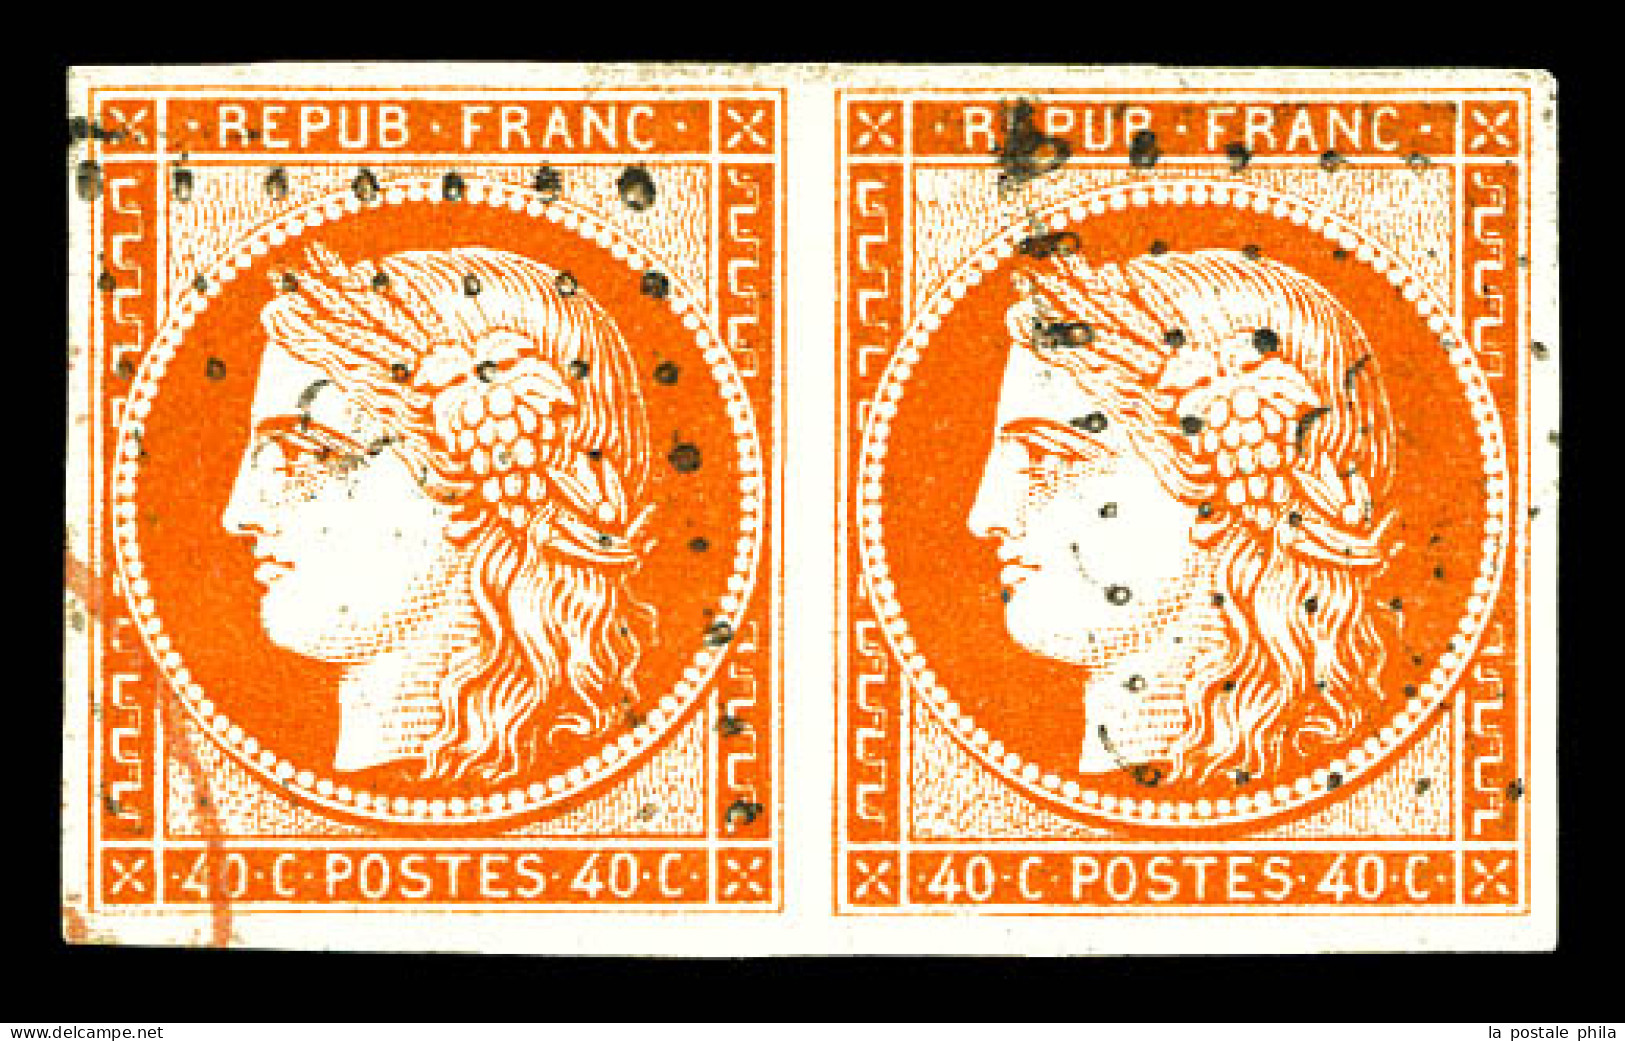 O N°5, 40c Orange En Paire, Grande Fraîcheur. SUP (signée Scheller/certificat)  Qualité: Oblitéré  Cote: 1200 Euros - 1849-1850 Cérès